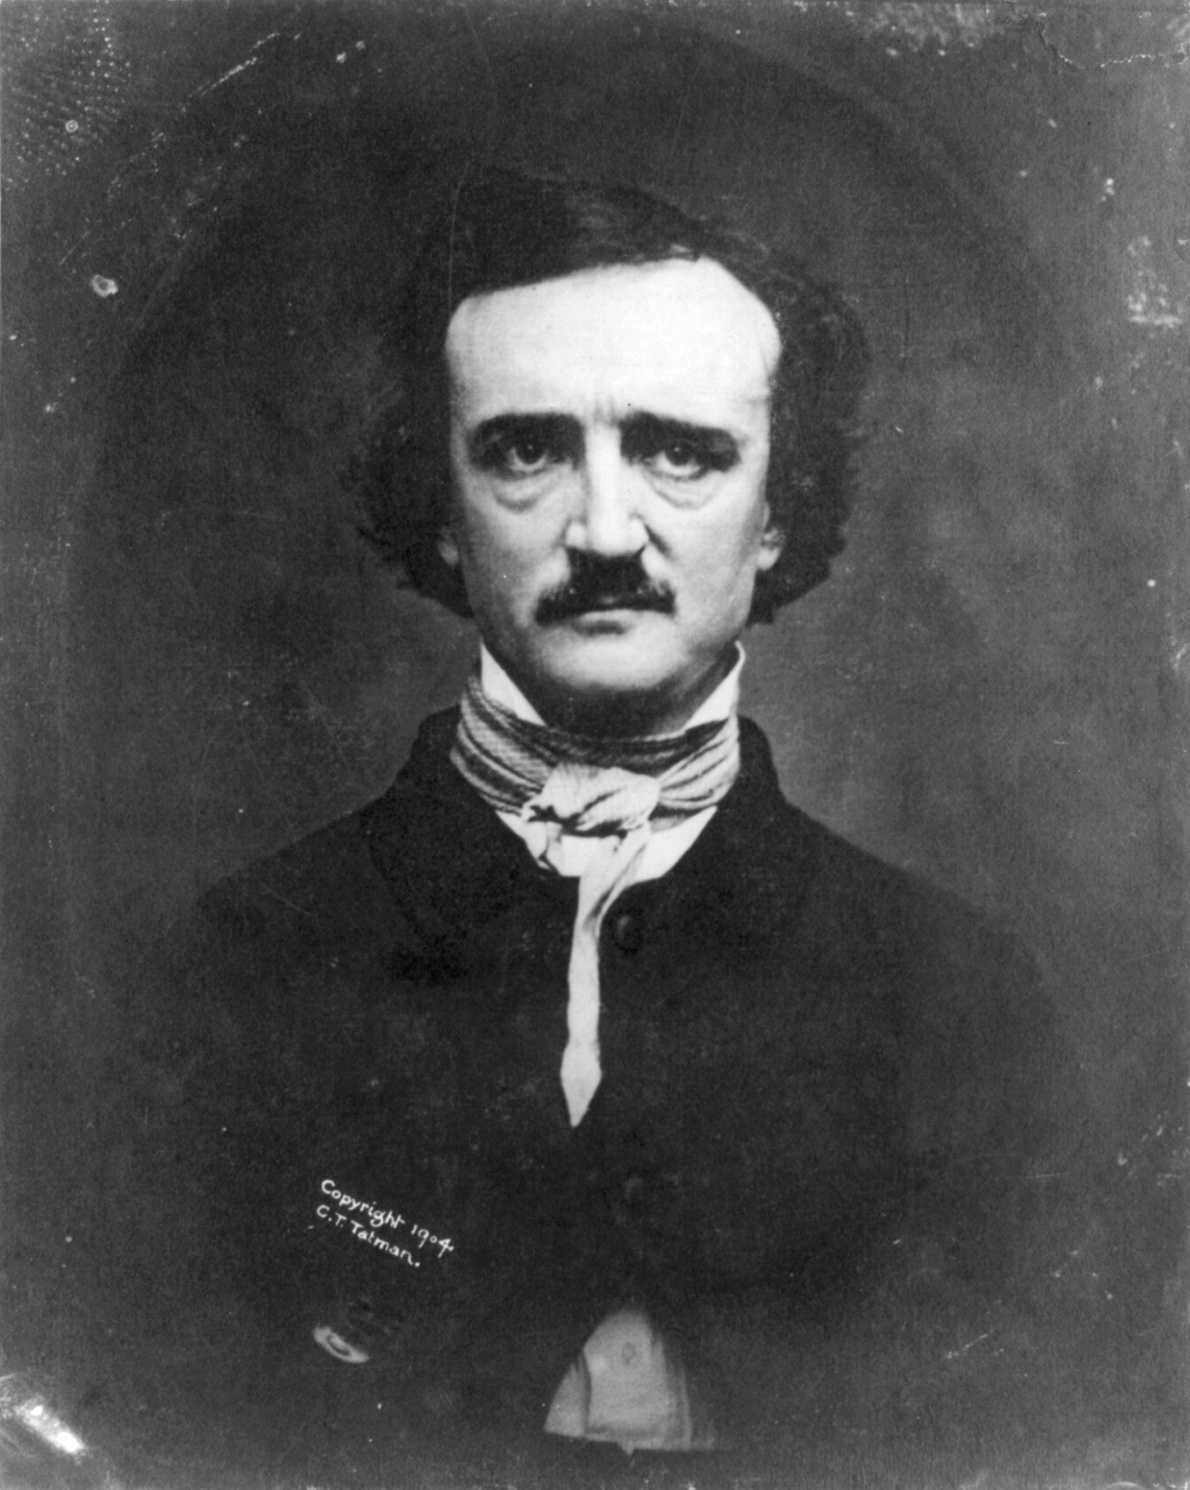 La vita da film di Edgar Allan Poe, il profeta inesorabile